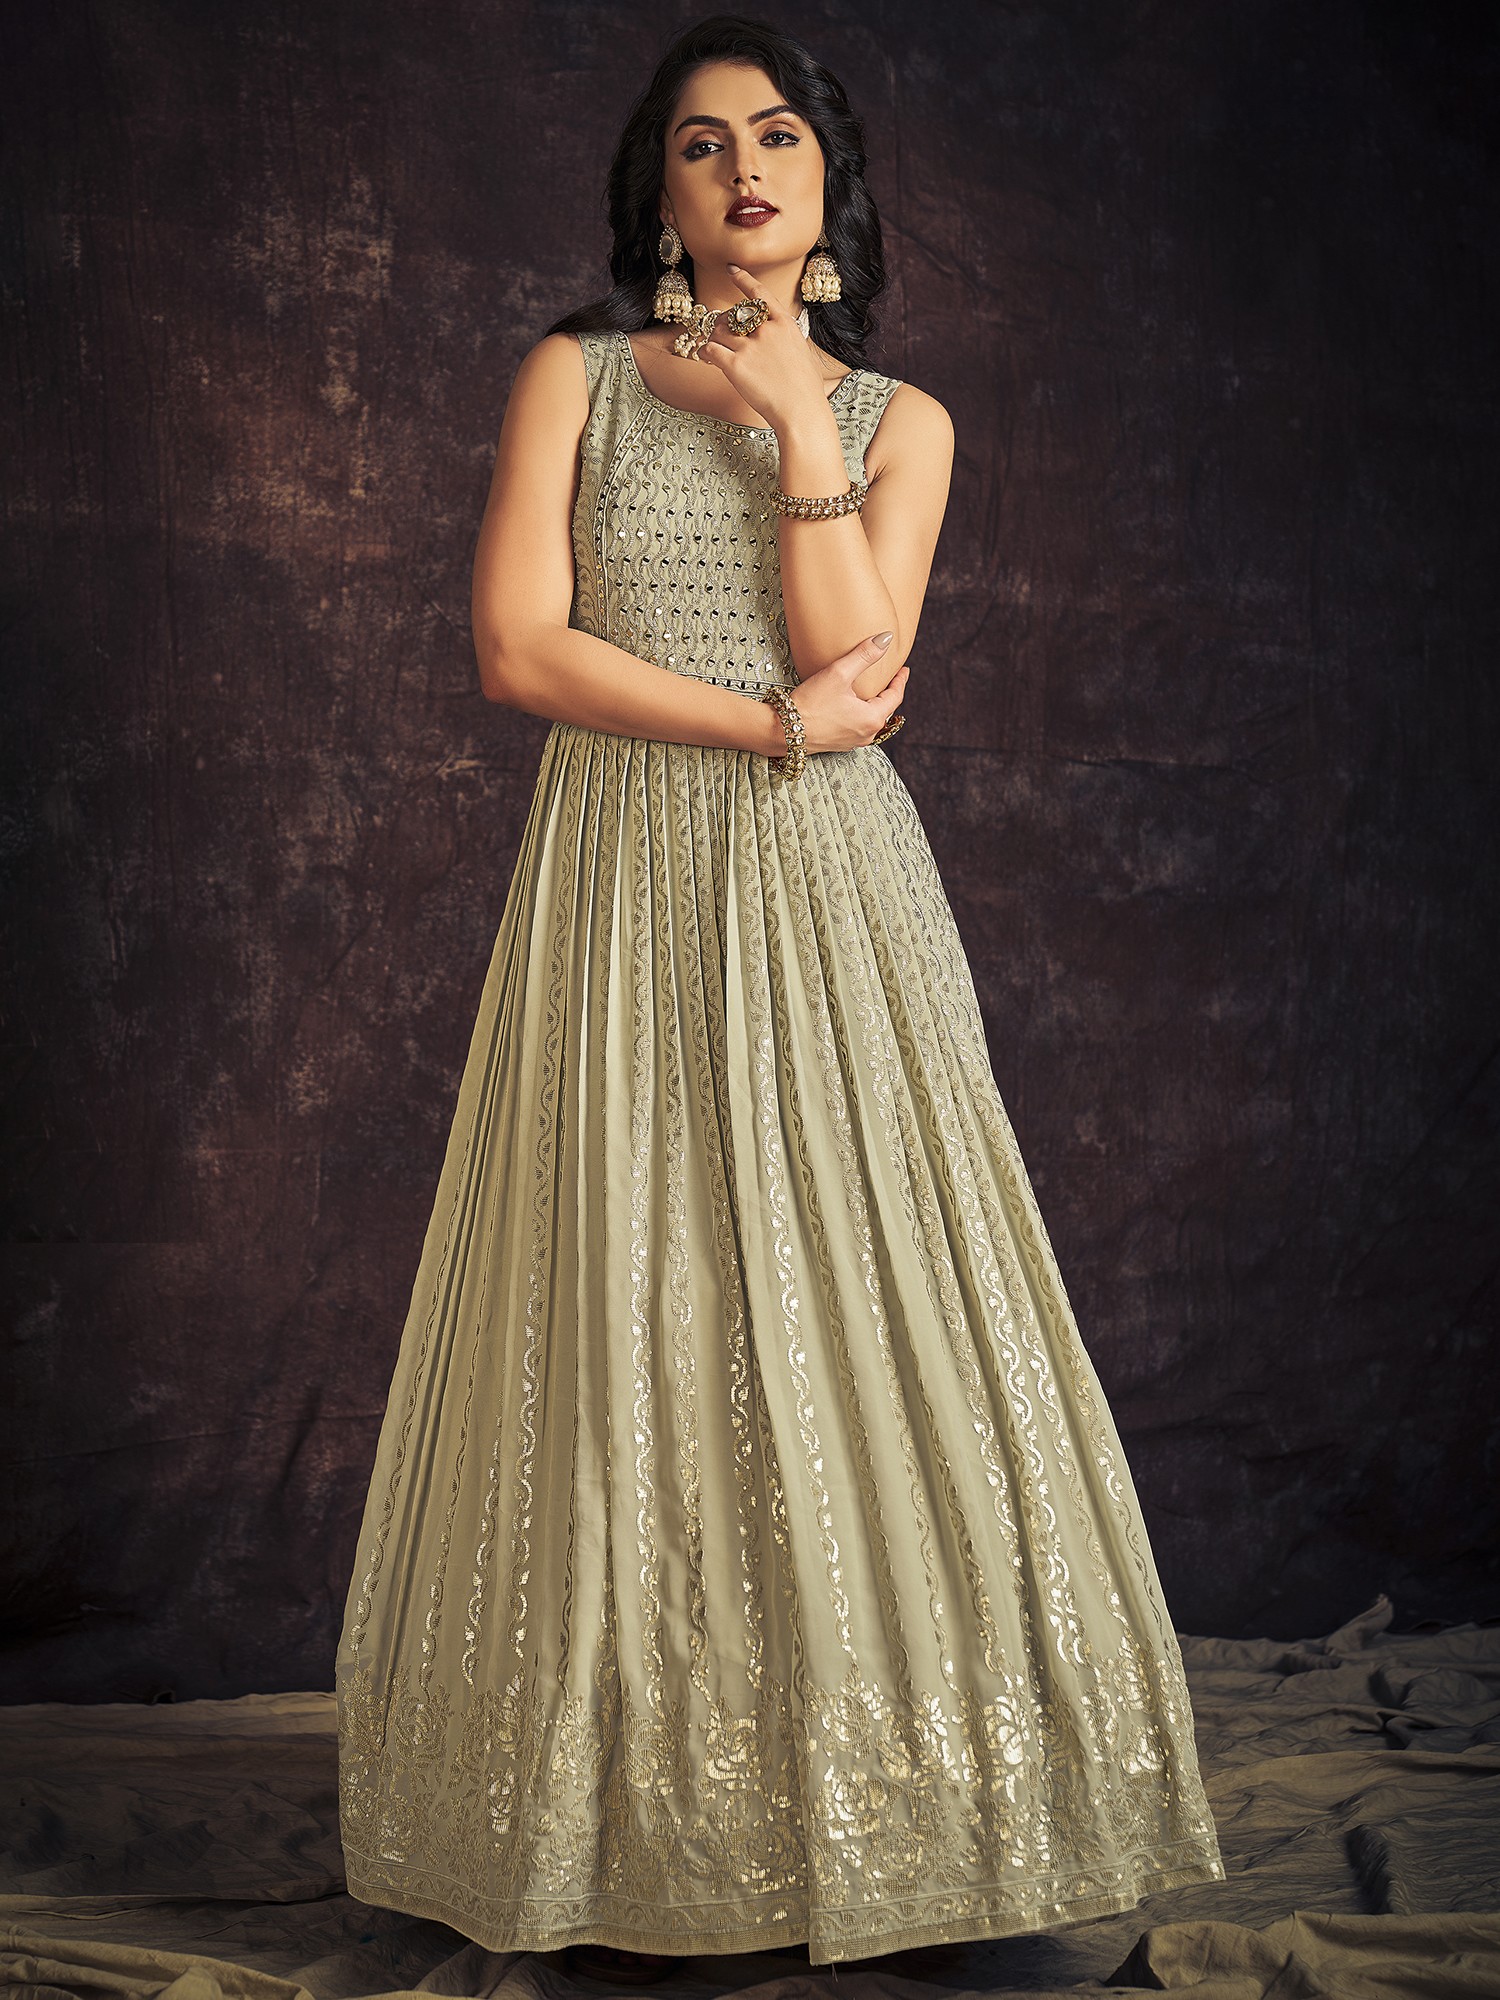 Buy Nikki Tikki Women's White Anarkali Style Long Gown Kurta Set with  Dupatta. (XX-Large) at Amazon.in